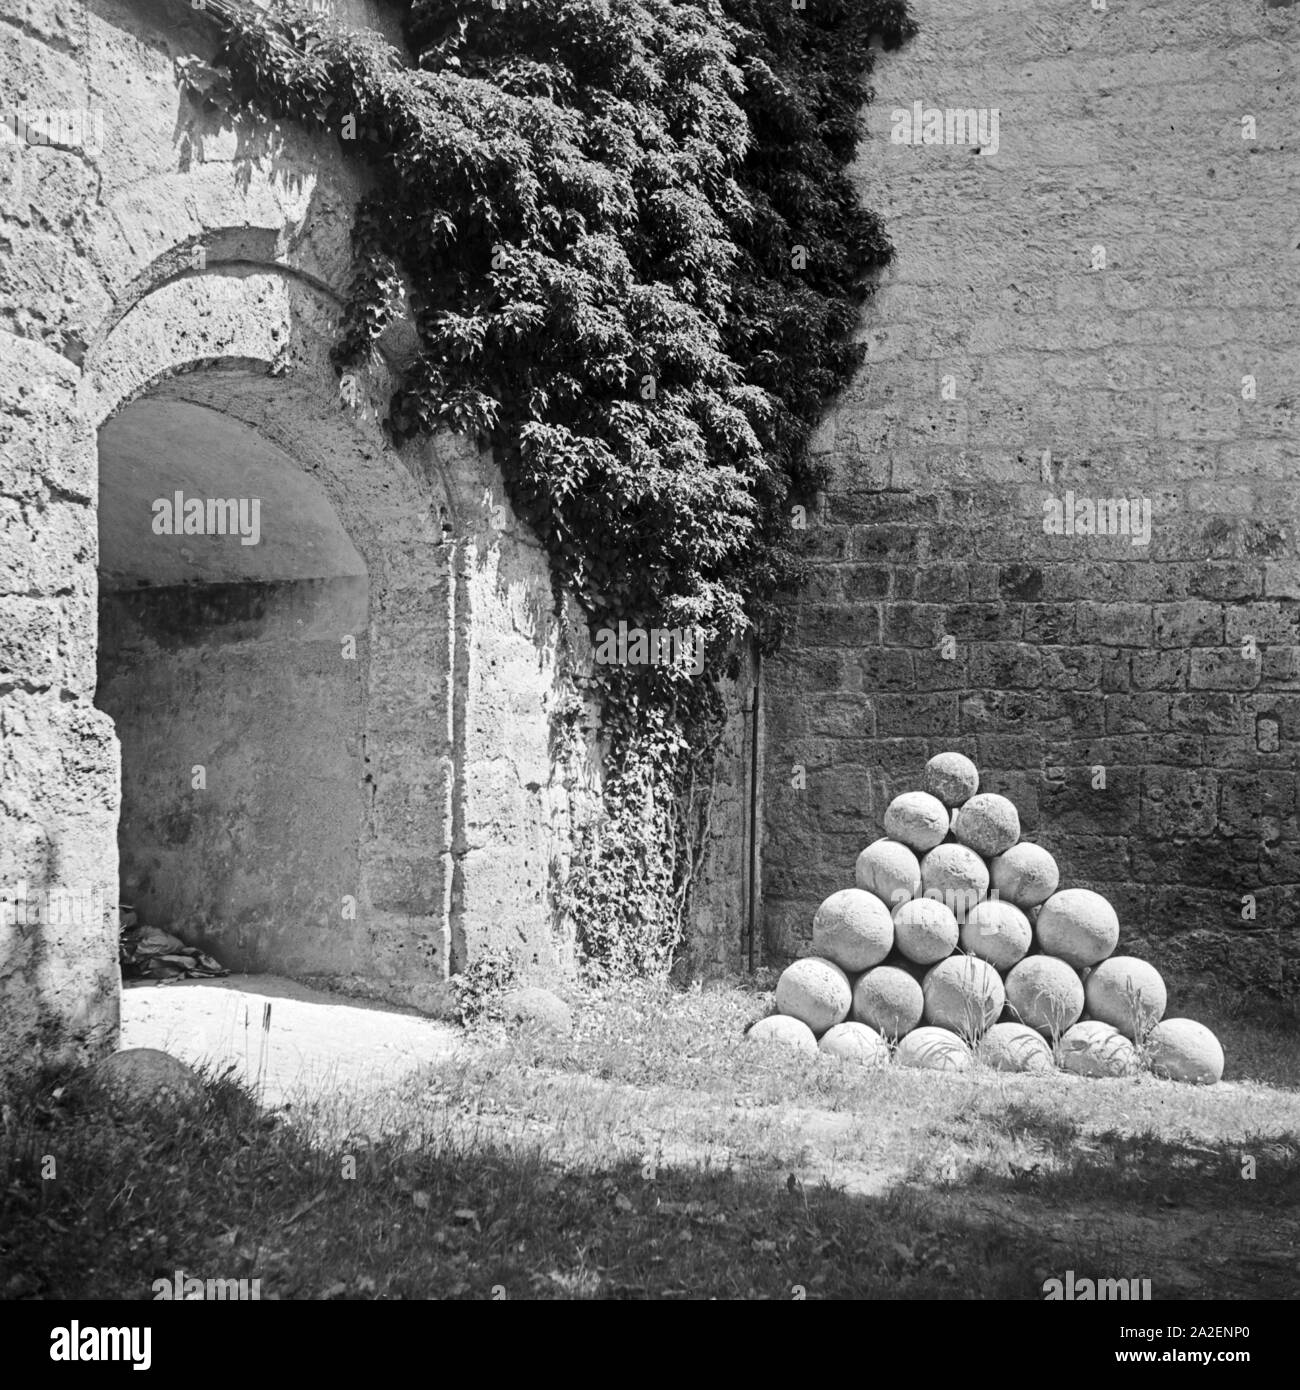 Kanonenkugeln Bechelsdorf Ein alter im Burghof der Burg von Burghausen, Deutschland 1930 er Jahre. Une pile de boulets de pierre dans la cour de l'ancien château de Burghausen, Allemagne 1930. Banque D'Images